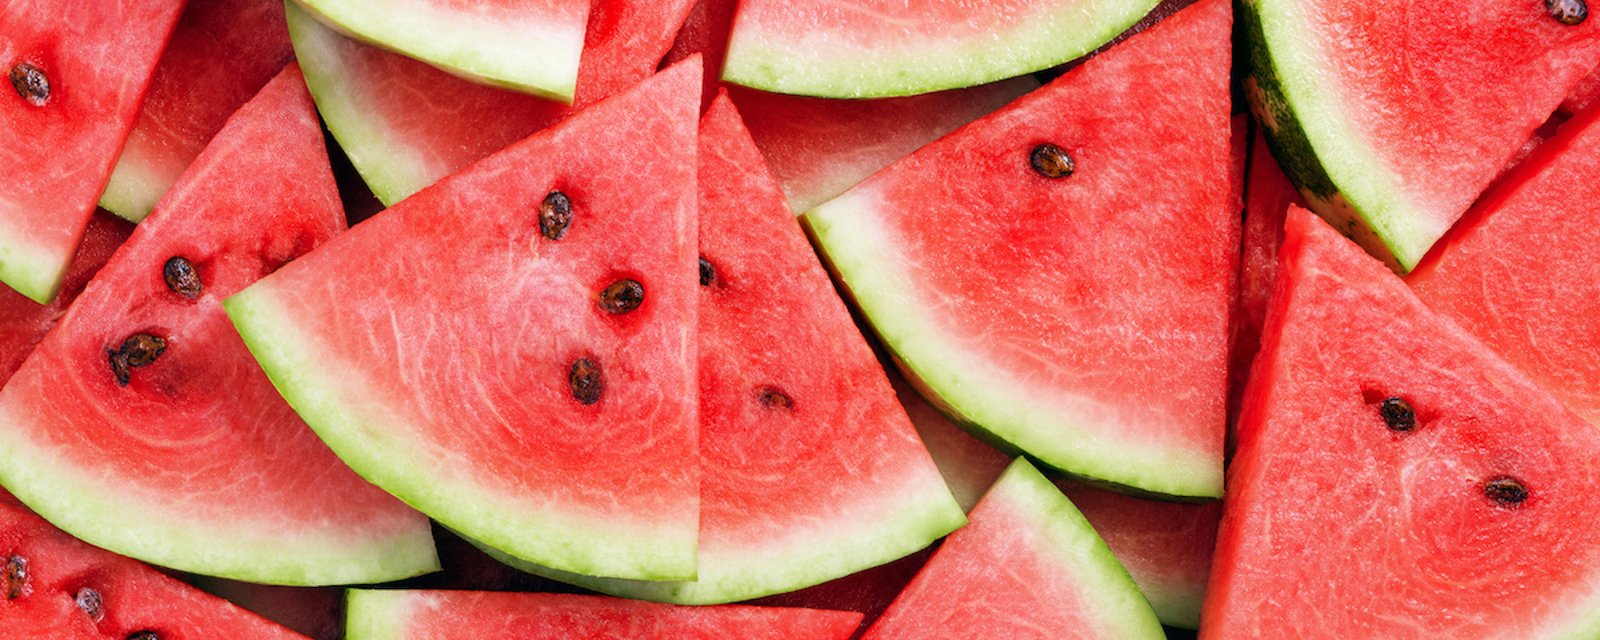 7 infos intéressantes concernant le melon d'eau